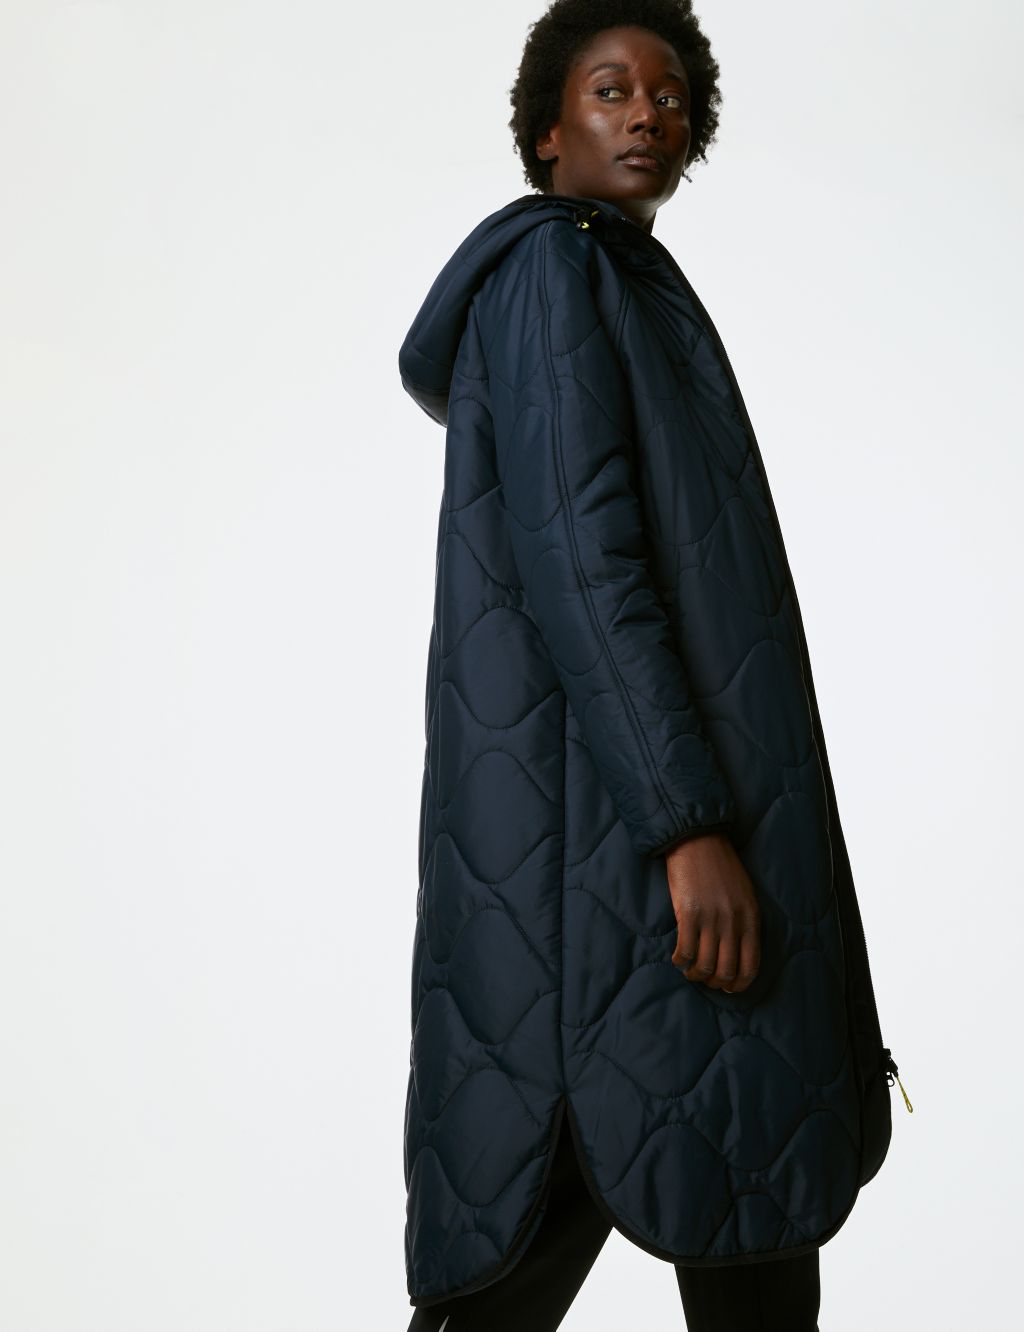 Stormwear™ Fleece Lined Longline Parka image 5